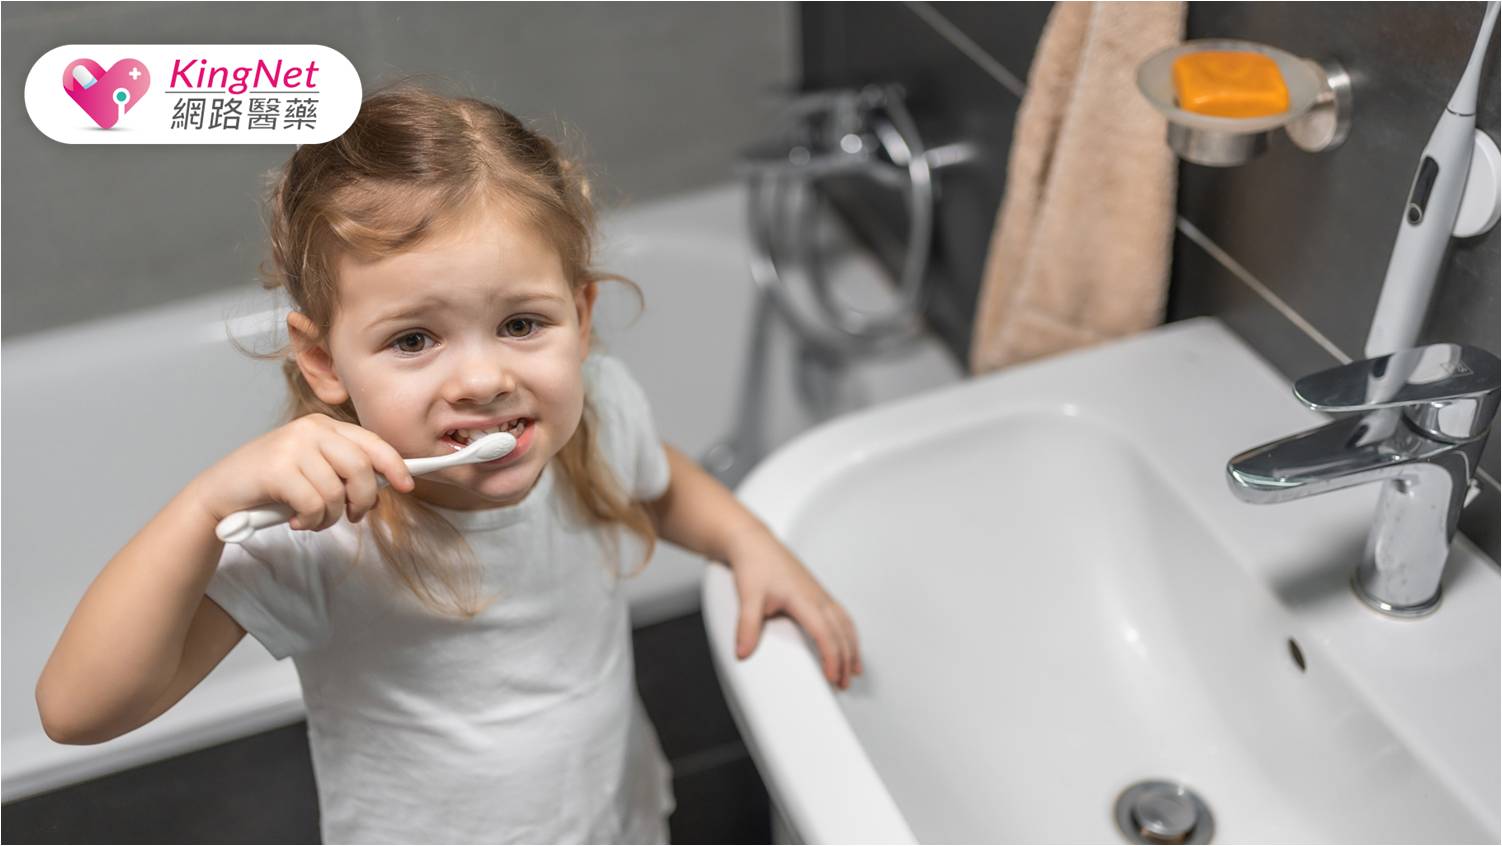 正確的刷牙習慣應從小培養！牙醫師教你如何幫小朋友刷牙